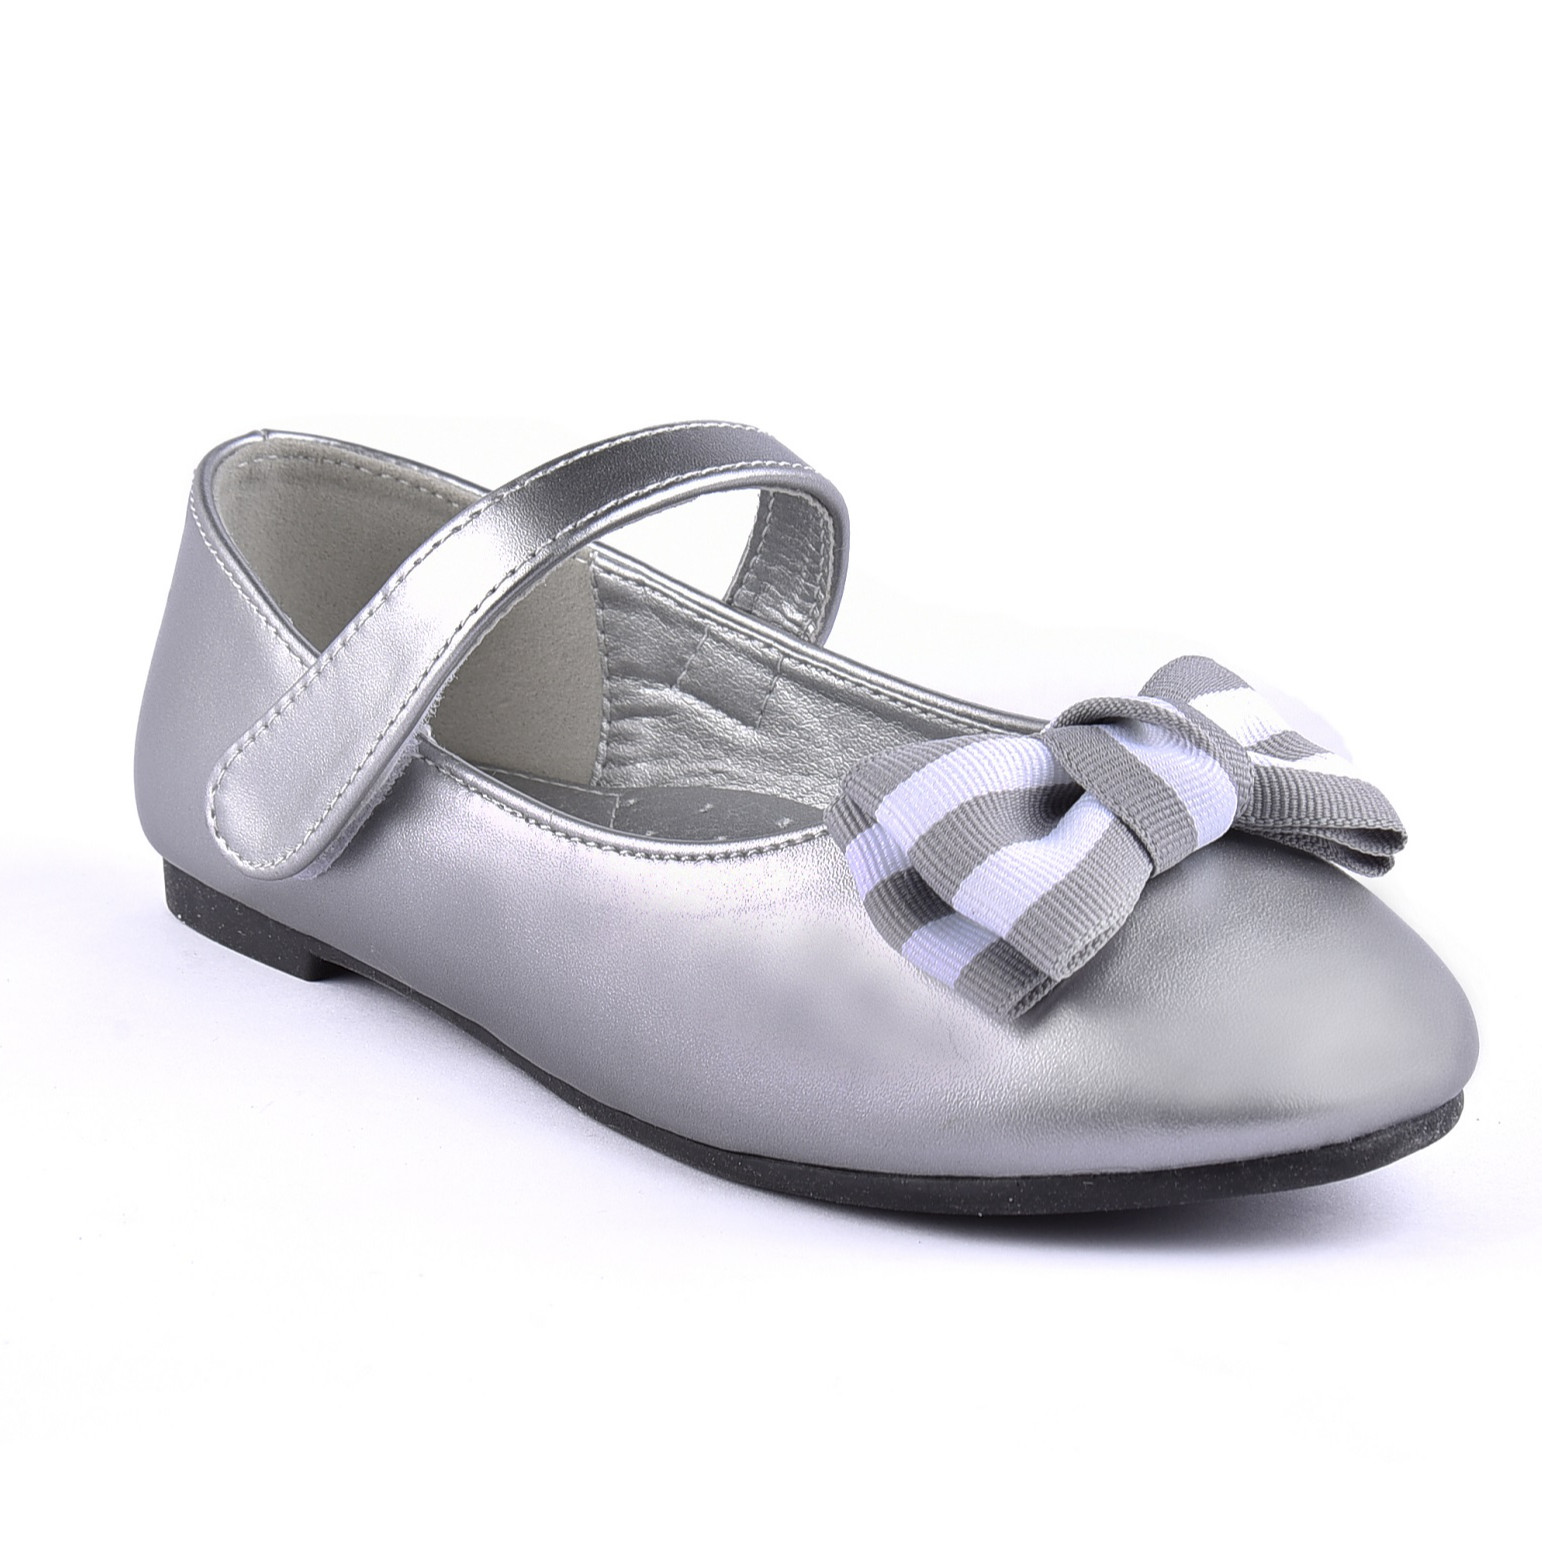 Giày Búp Bê Bé Gái Đi Học Đi Chơi Crown Space UK Ballerina Trẻ Em Cao Cấp CRUK3118 Nhẹ Êm Thoáng Size 27-31/4-14 Tuổi